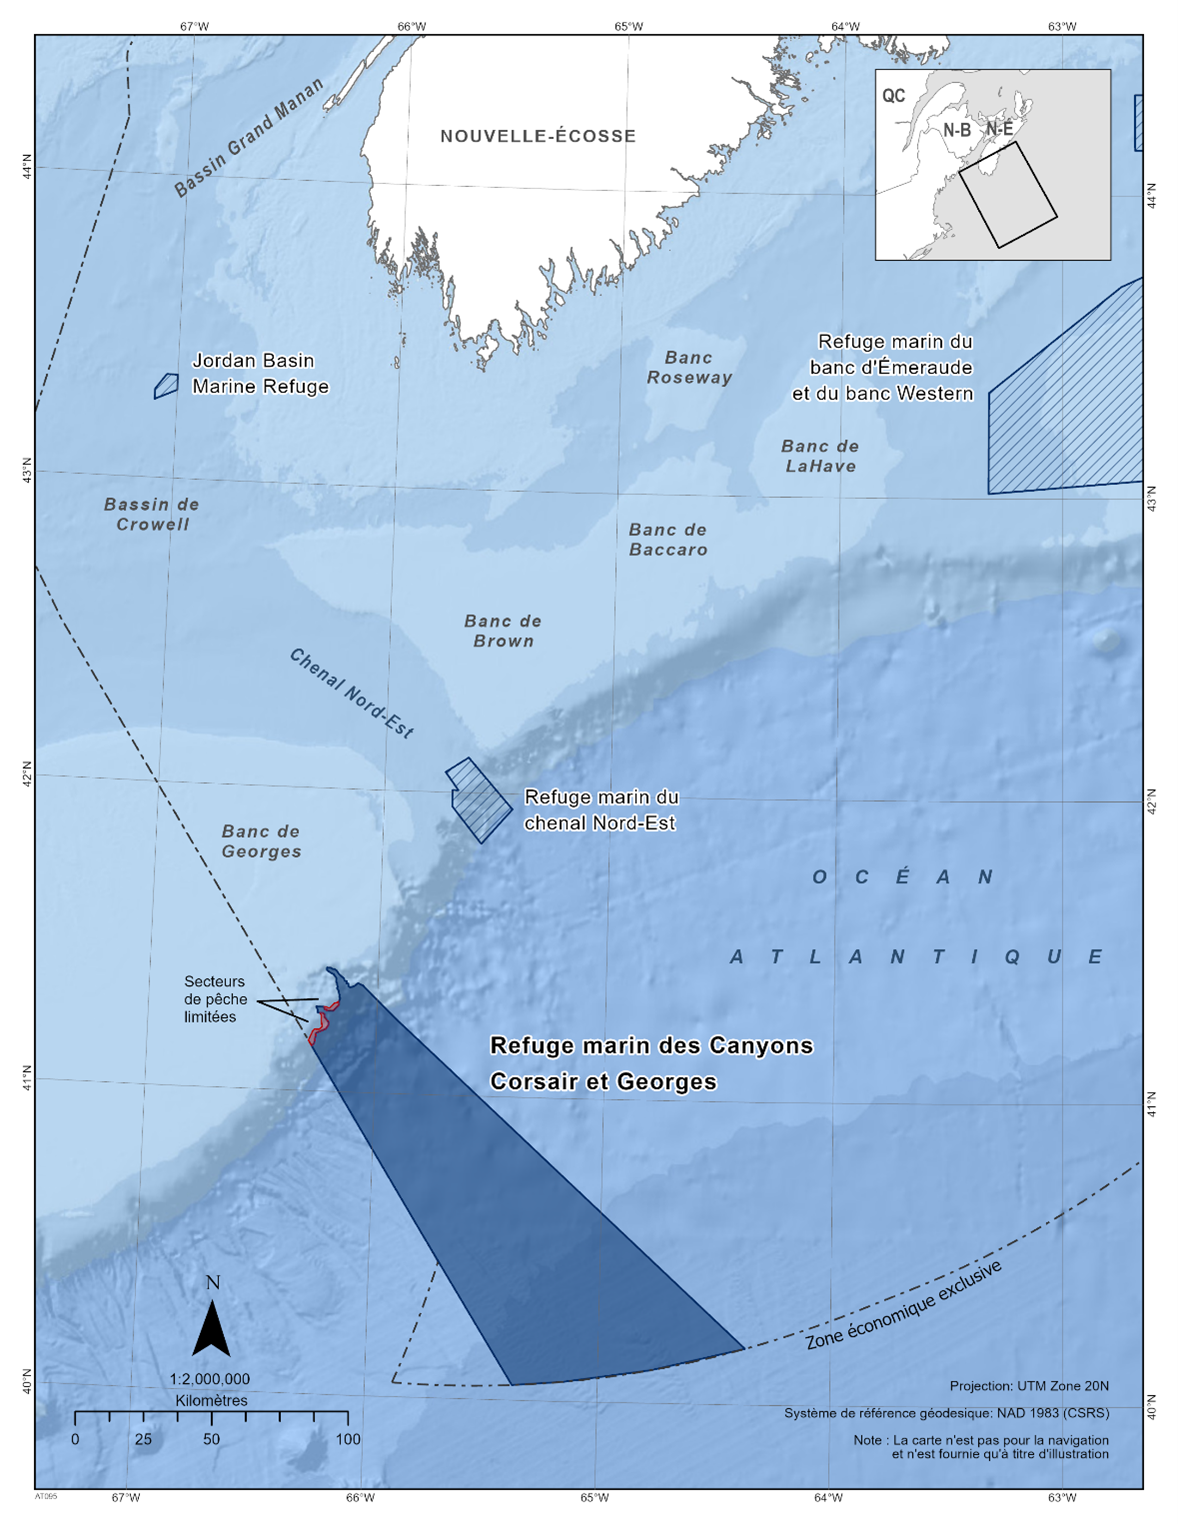 Carte du refuge marin des canyons Corsair et Georges en bleu foncé. La carte inclut également les autres refuges marins en lignes diagonales bleu foncé (le refuge marin du bassin Jordan, le refuge marin du banc d'Émeraude et du banc Western, le refuge marin du chenal Nord-Est). 